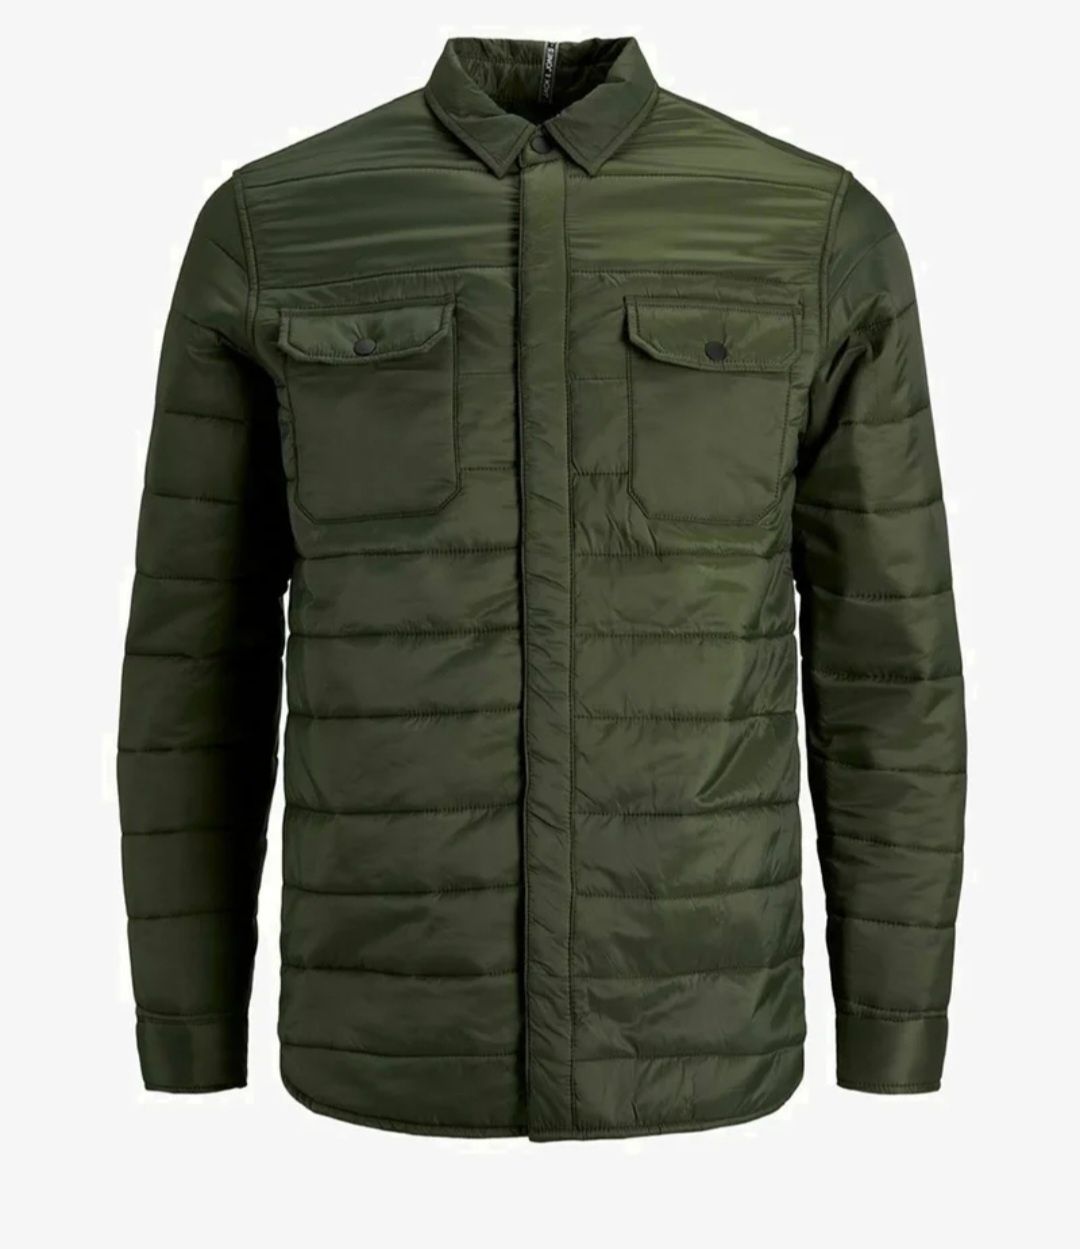 Nowa wiosenna kurtka zakupiona w Zalando Jack&Jones rozmiar XL.